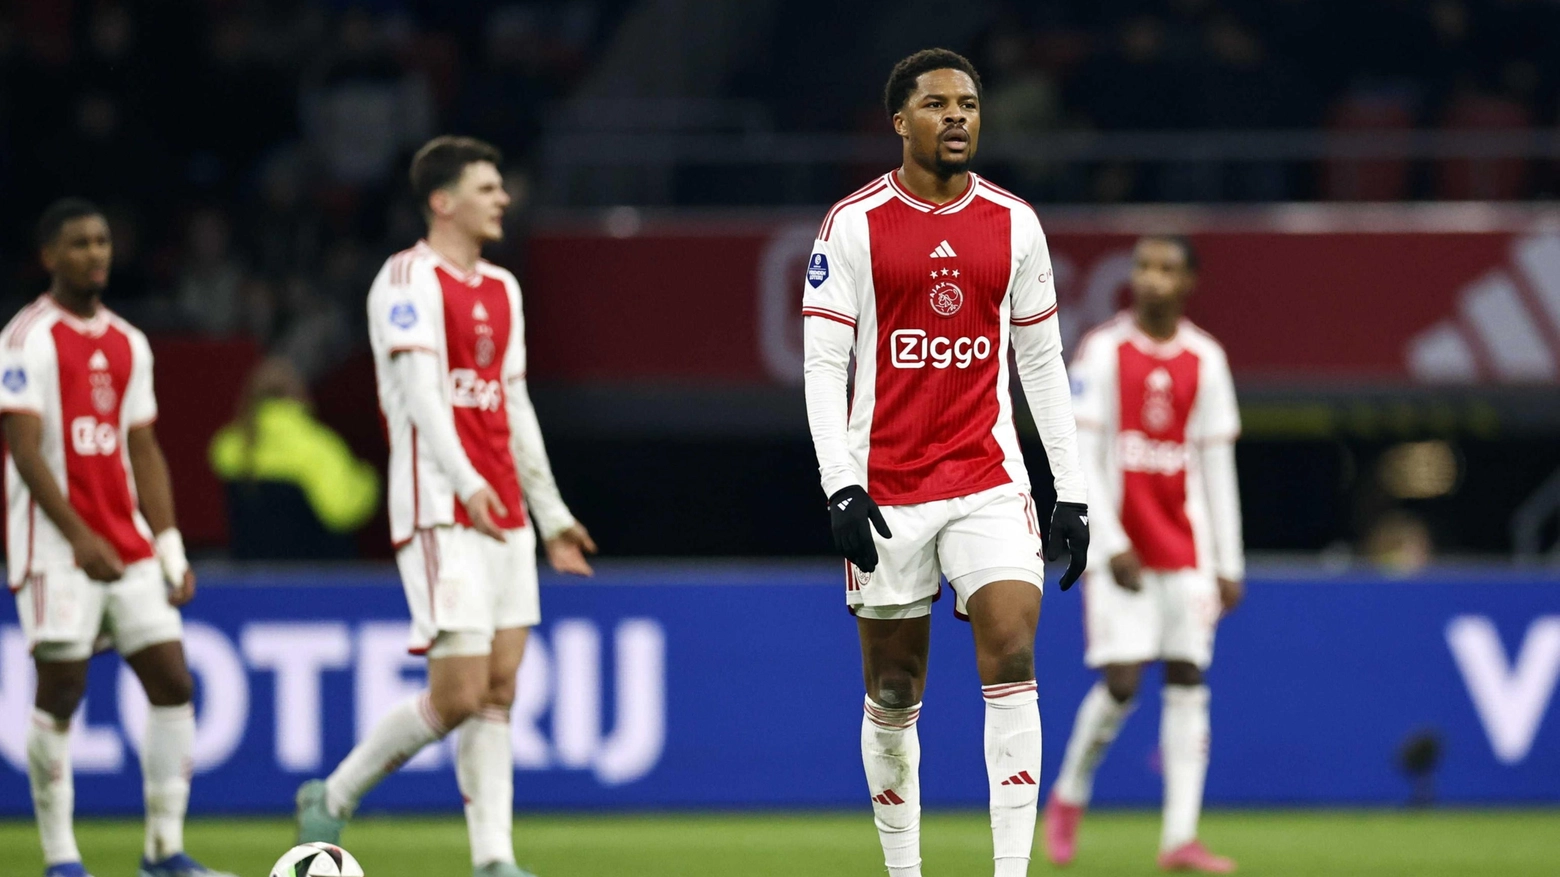 L'Ajax è a uno dei suoi minimi storici nel campionato olandese